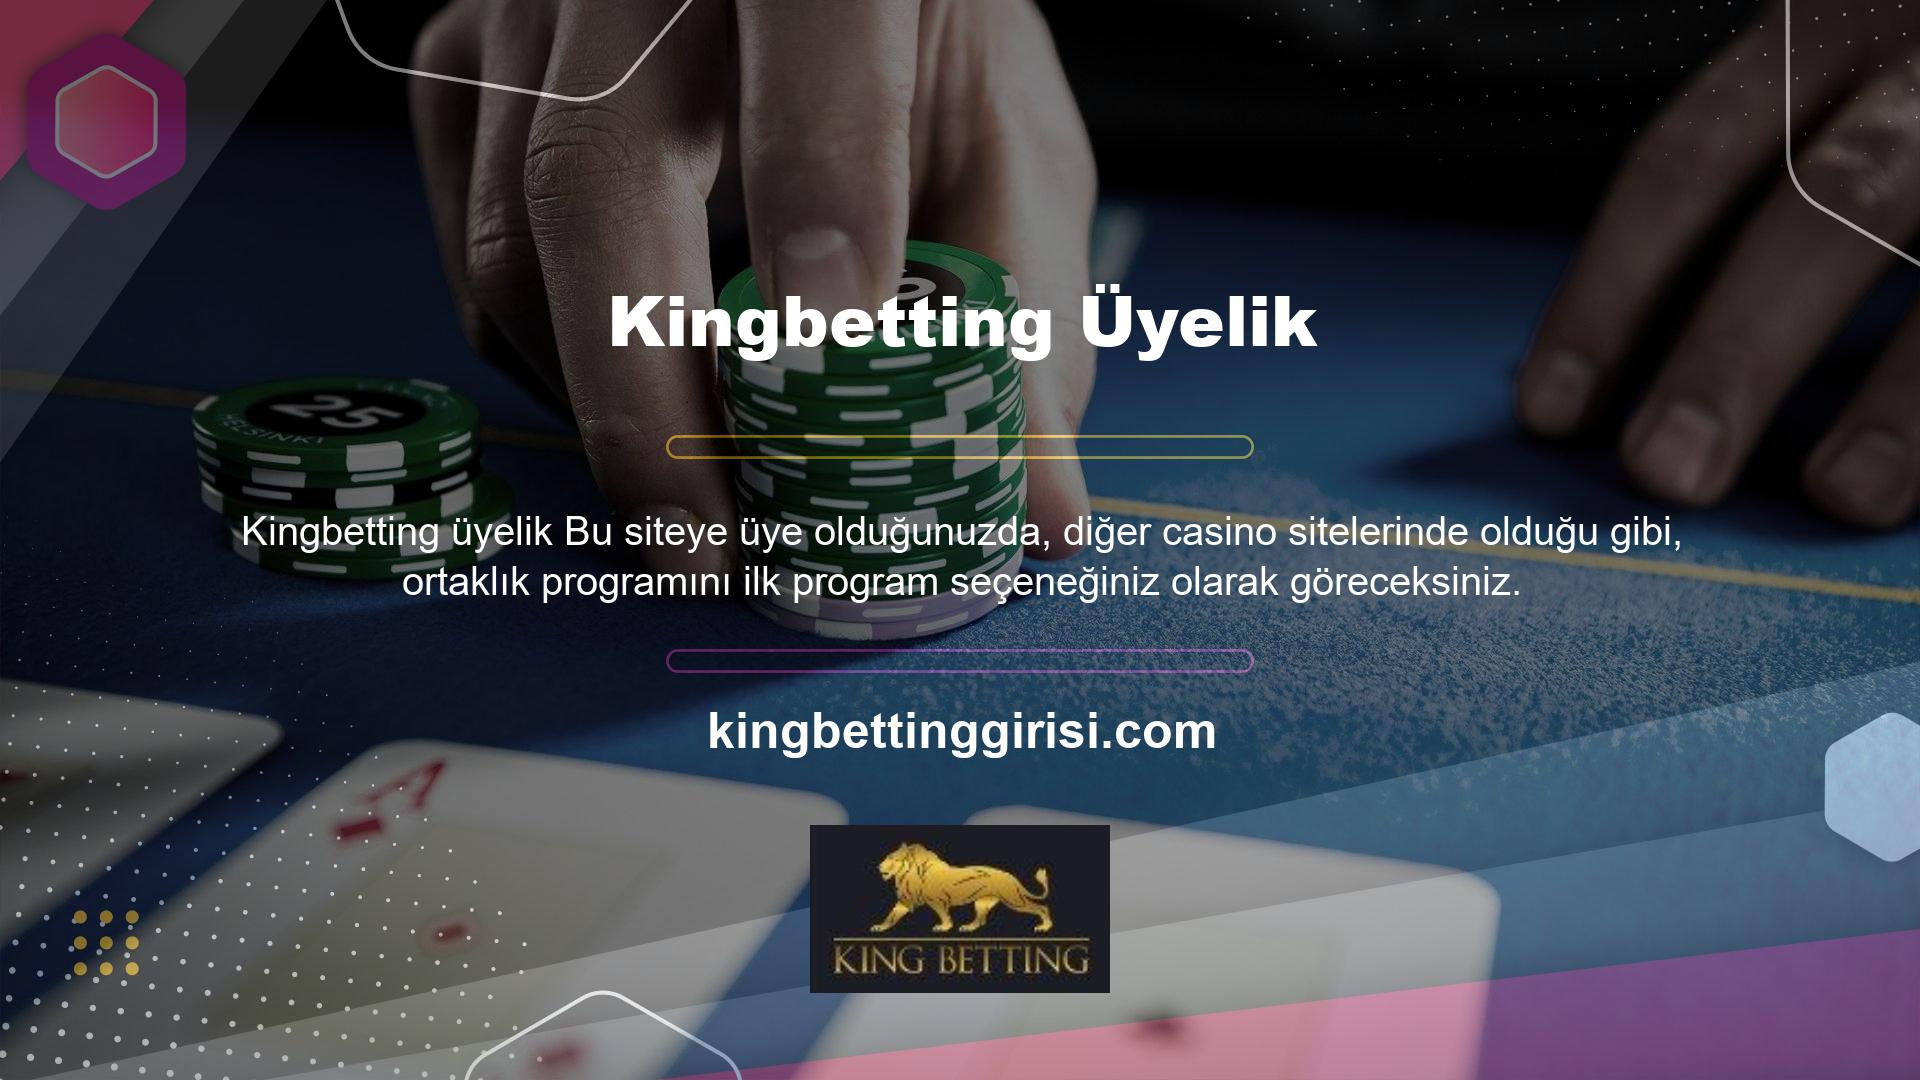 Kingbetting üyelik işlemi de web sitesinde basit bir başvuru formu doldurularak tamamlanır